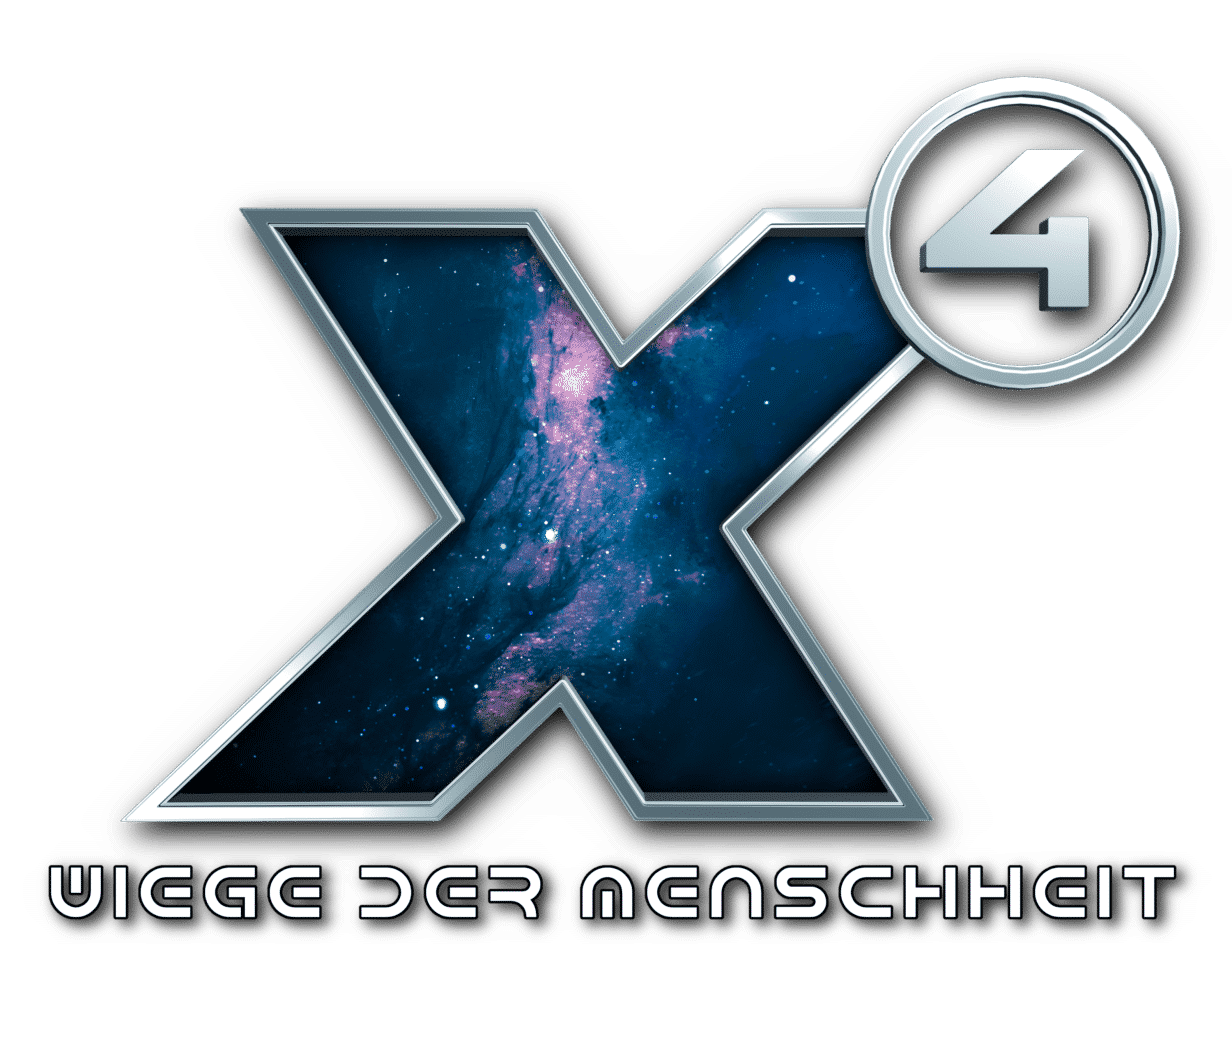 x4 wiege der menschheit logo